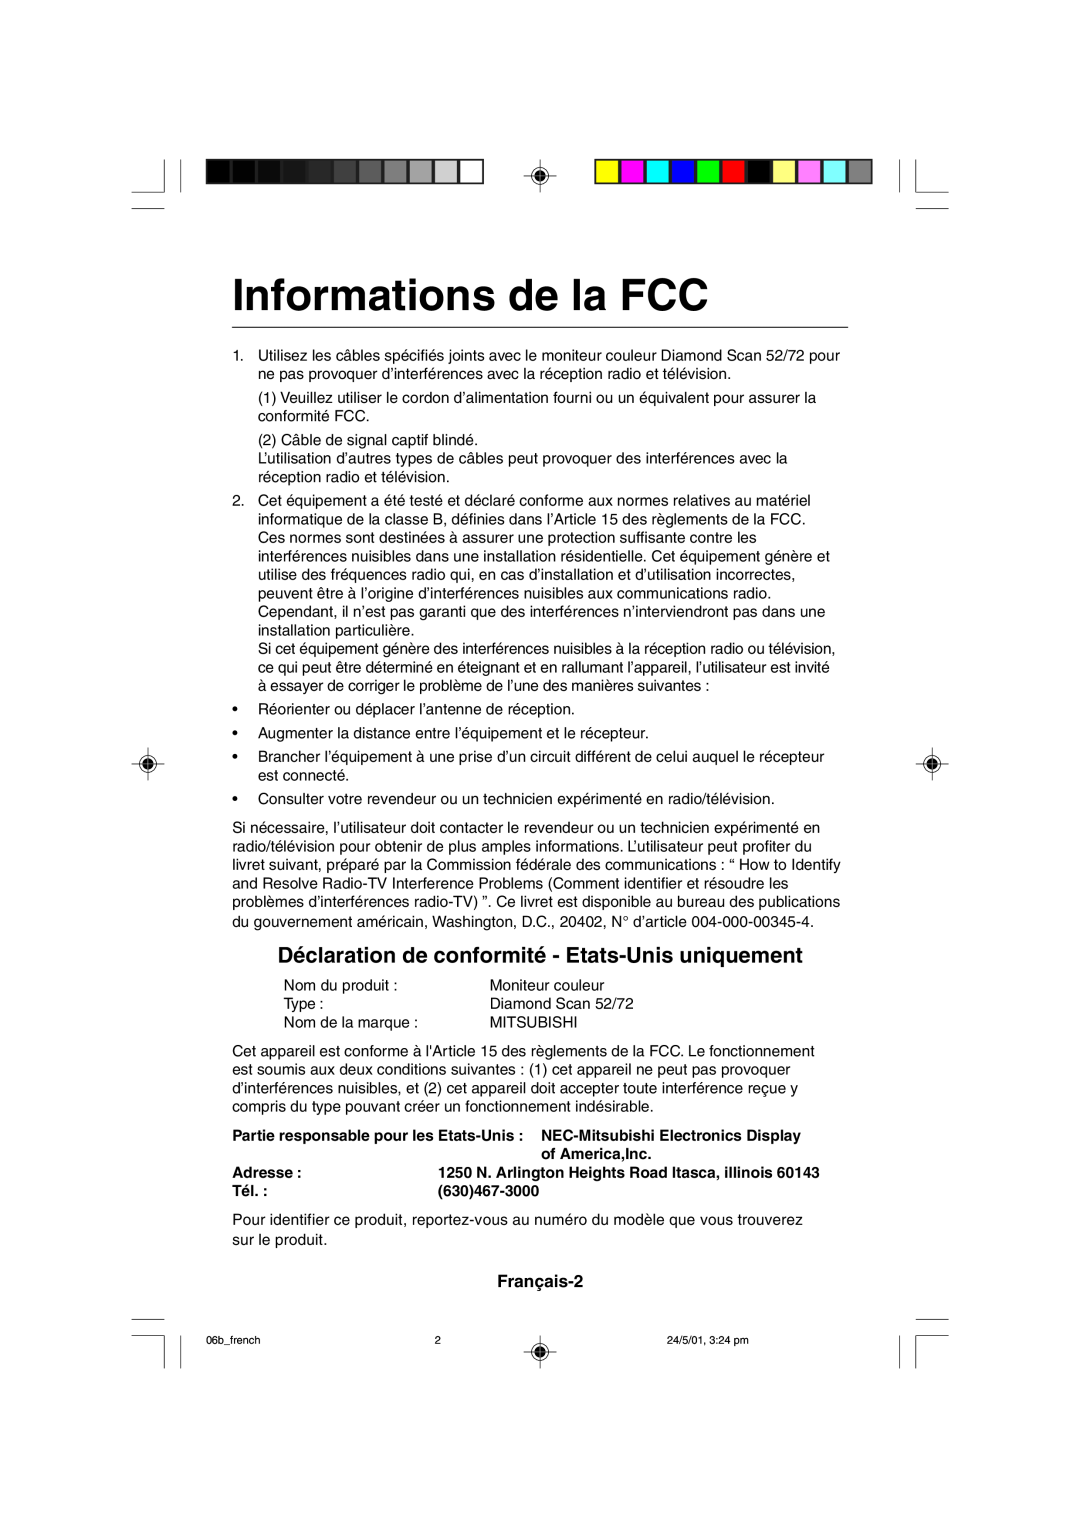 Mitsubishi Electronics M557 Informations de la FCC, Déclaration de conformité - Etats-Unis uniquement, Français-2, Adresse 